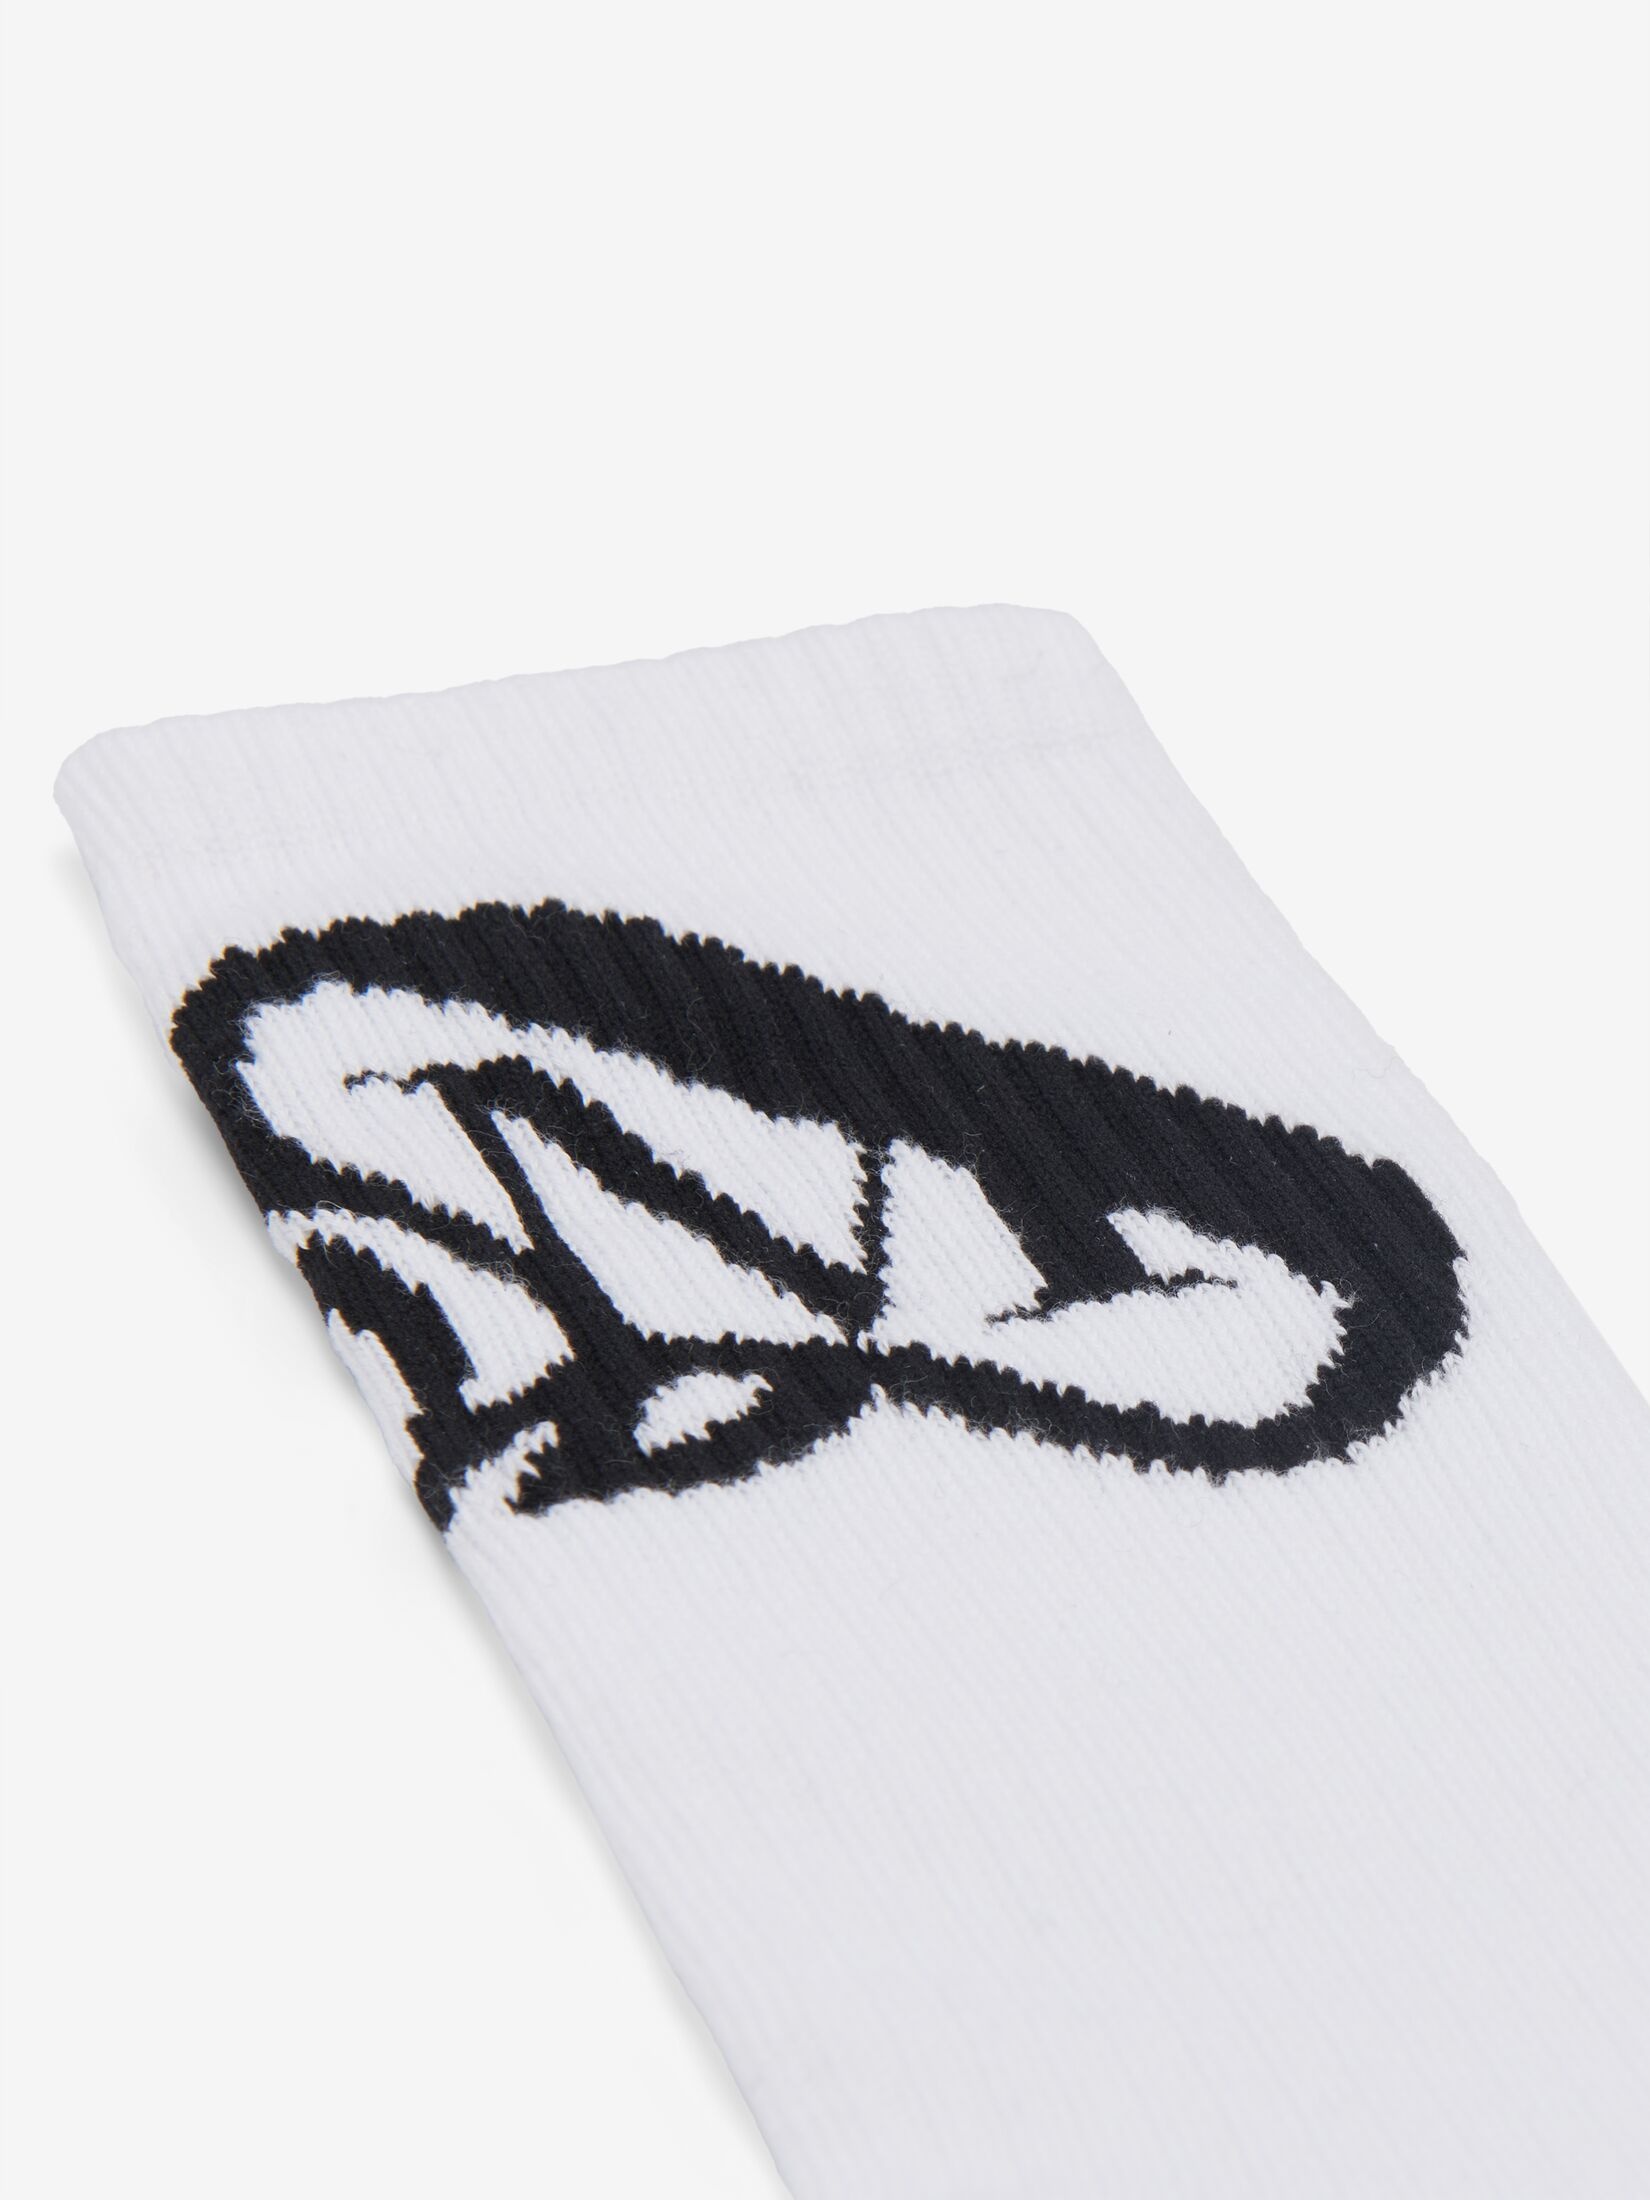 Men's Seal Logo Socks in Ivory/black - 2